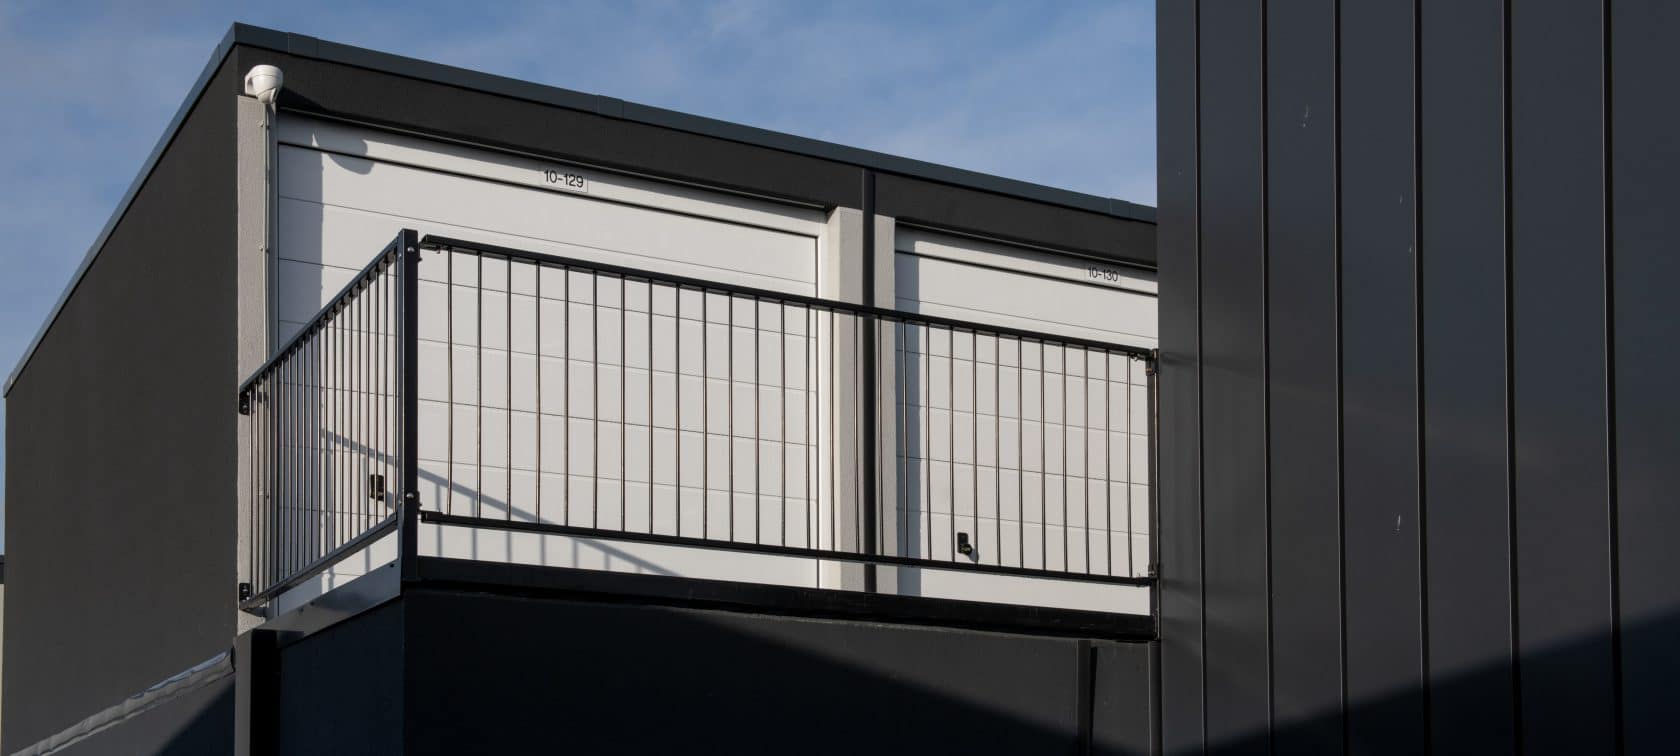 GaragePark Rotterdam Hordijk - etageboxen voor opslag en werkruimte